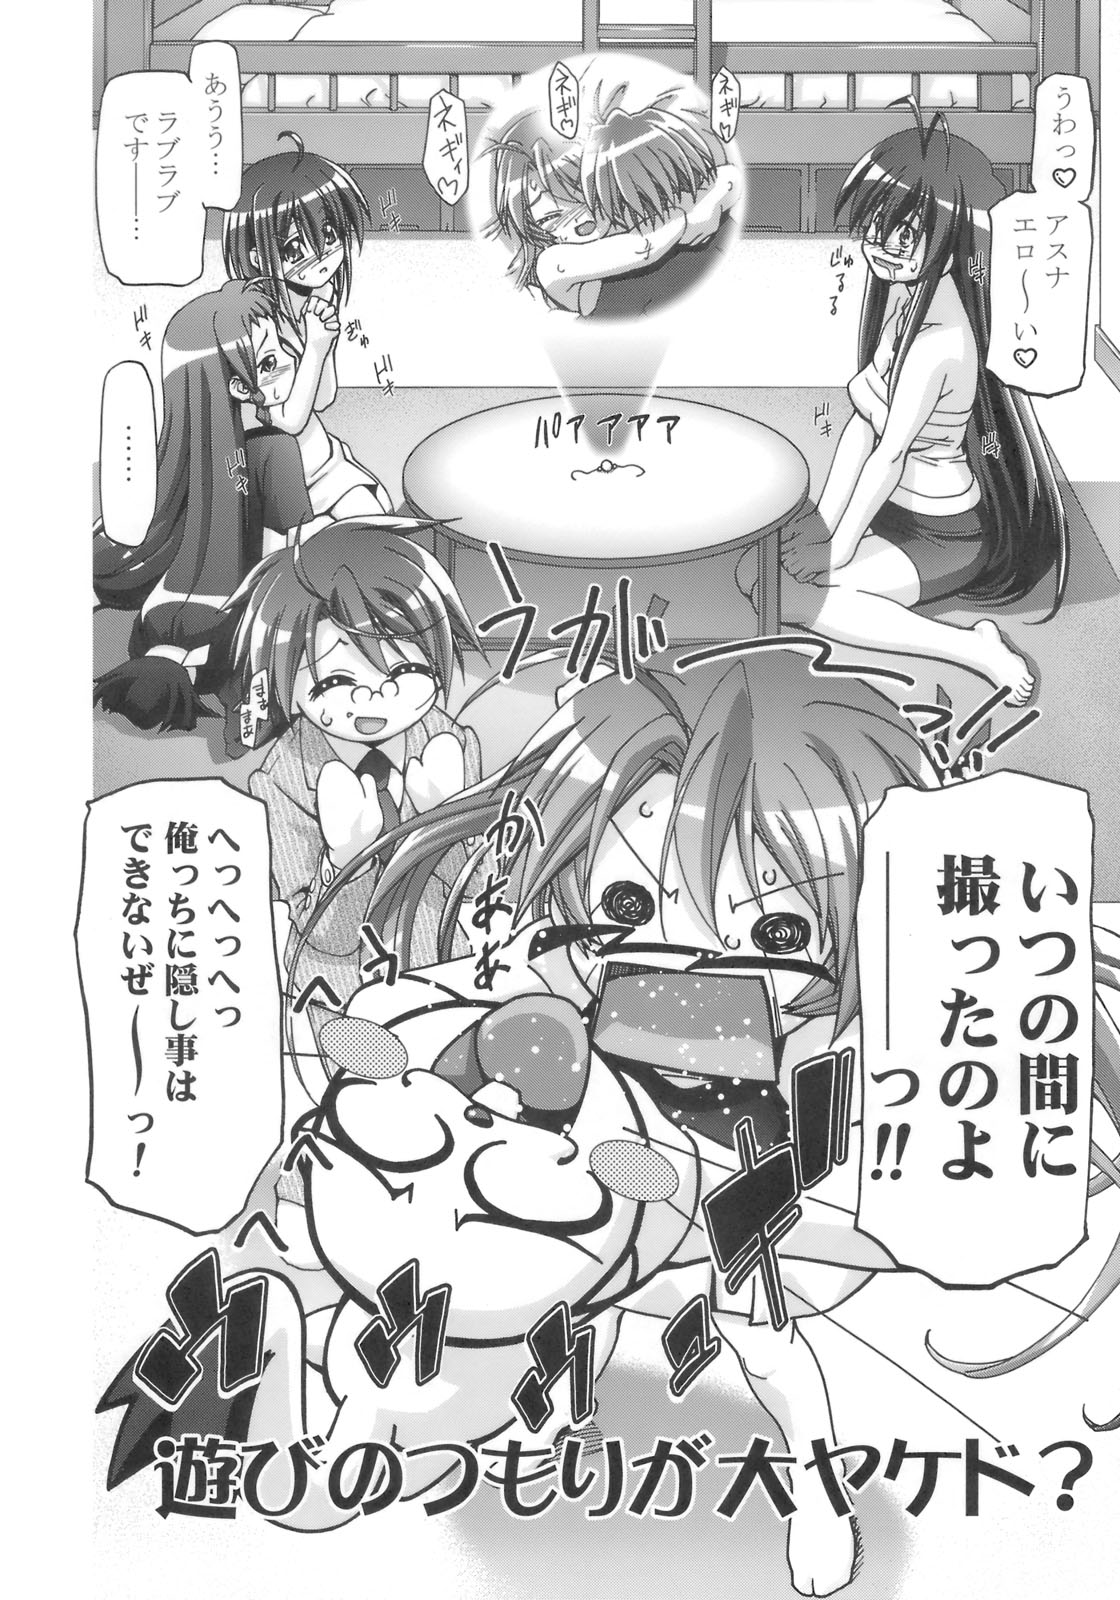 (SC39) [Gambler Club (Kousaka Jun)] Mahora Gakuen Tyuutoubu 3-A 3 Jikanme Negi X Haruna (Mahou Sensei Negima!) page 3 full